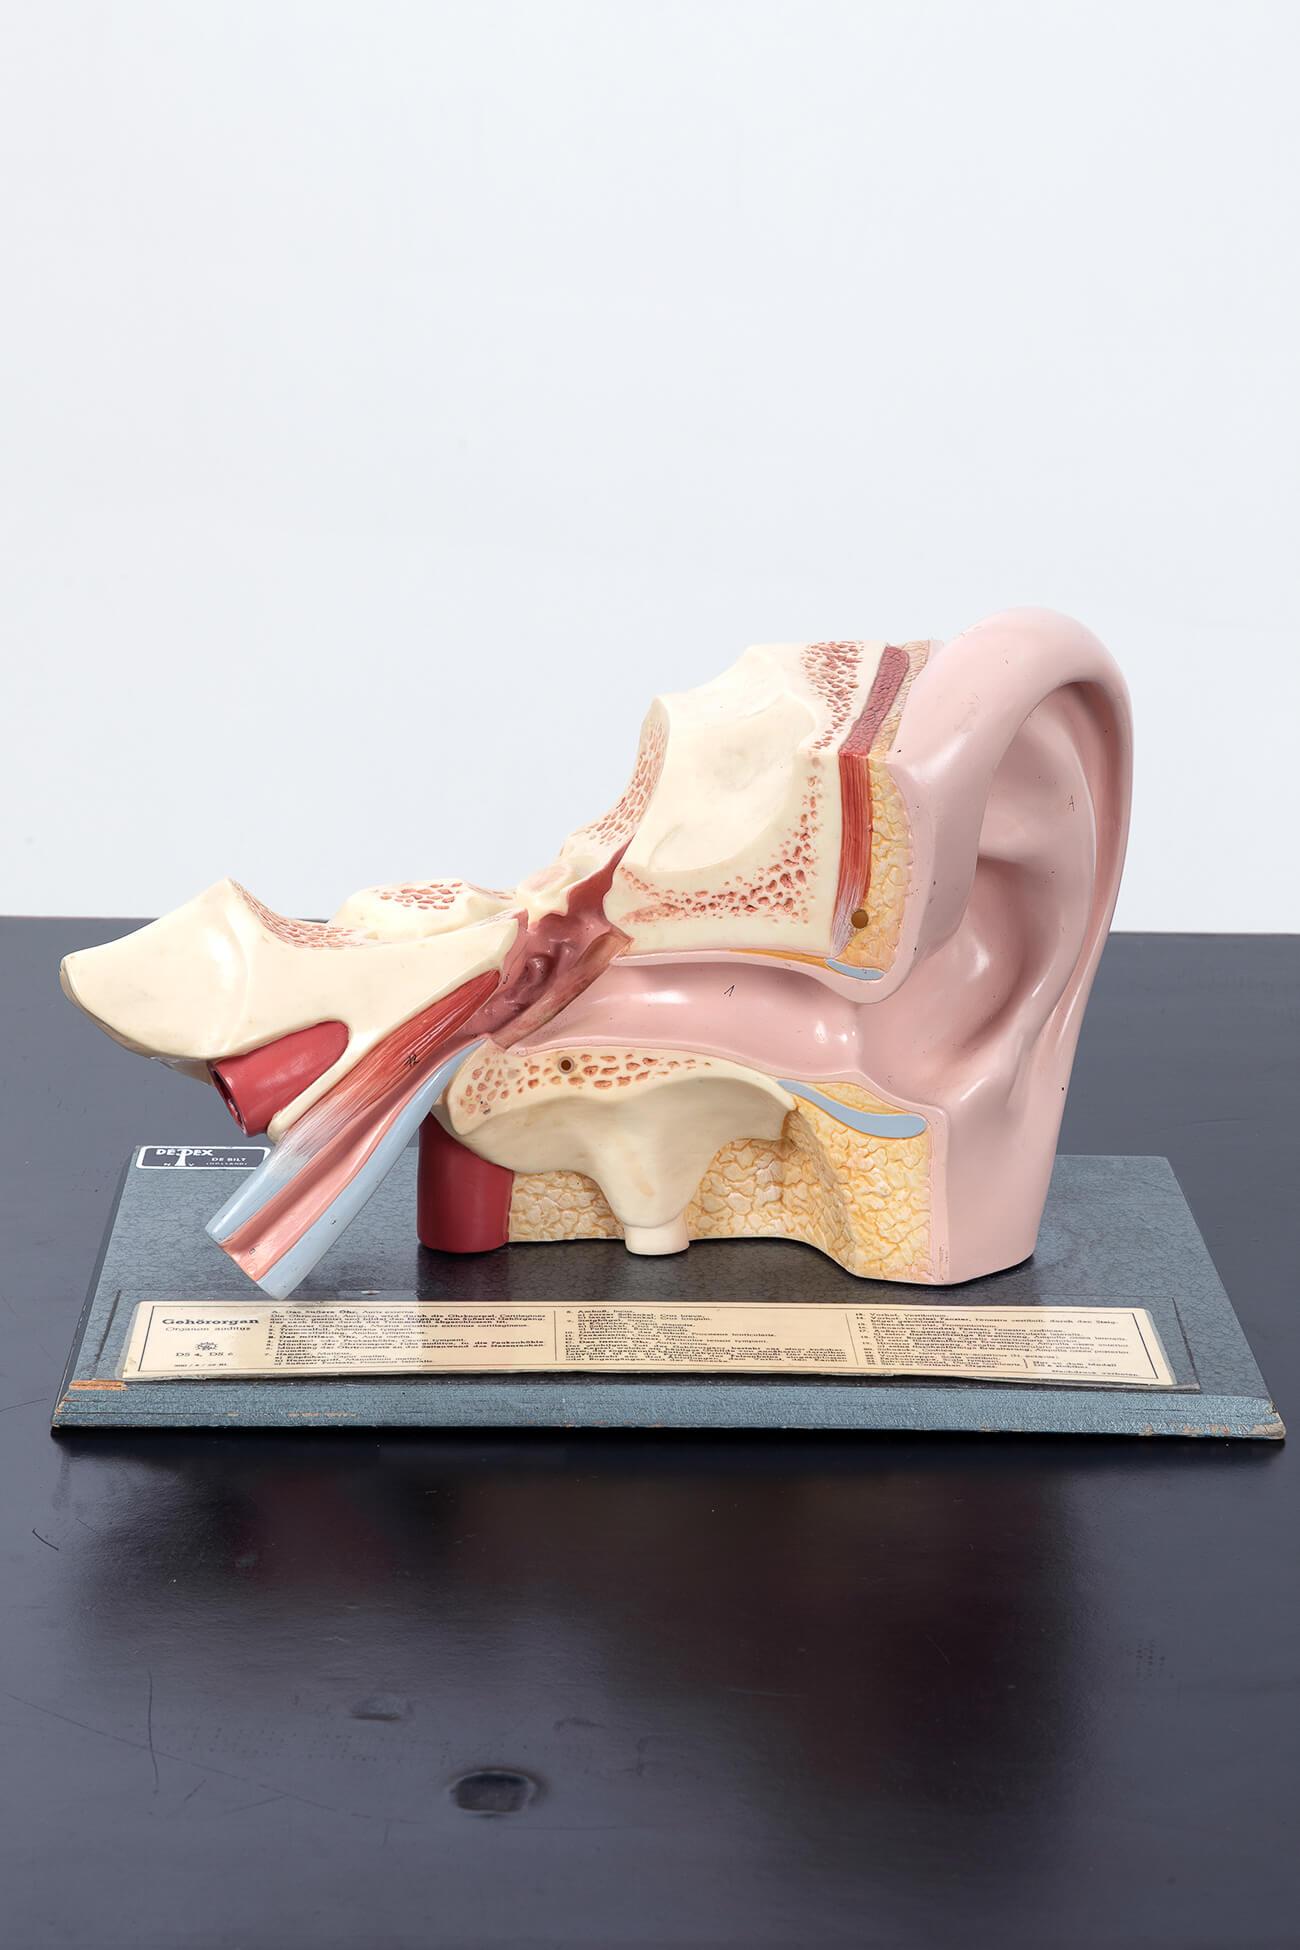 Paire de modèles de l'oreille humaine peints à la main montrant l'oreille externe ainsi que la membrane tympanique interne avec le malléus et l'enclume.

En bon état et marqué d'étiquettes explicatives sur le socle en bois.

Le premier modèle est